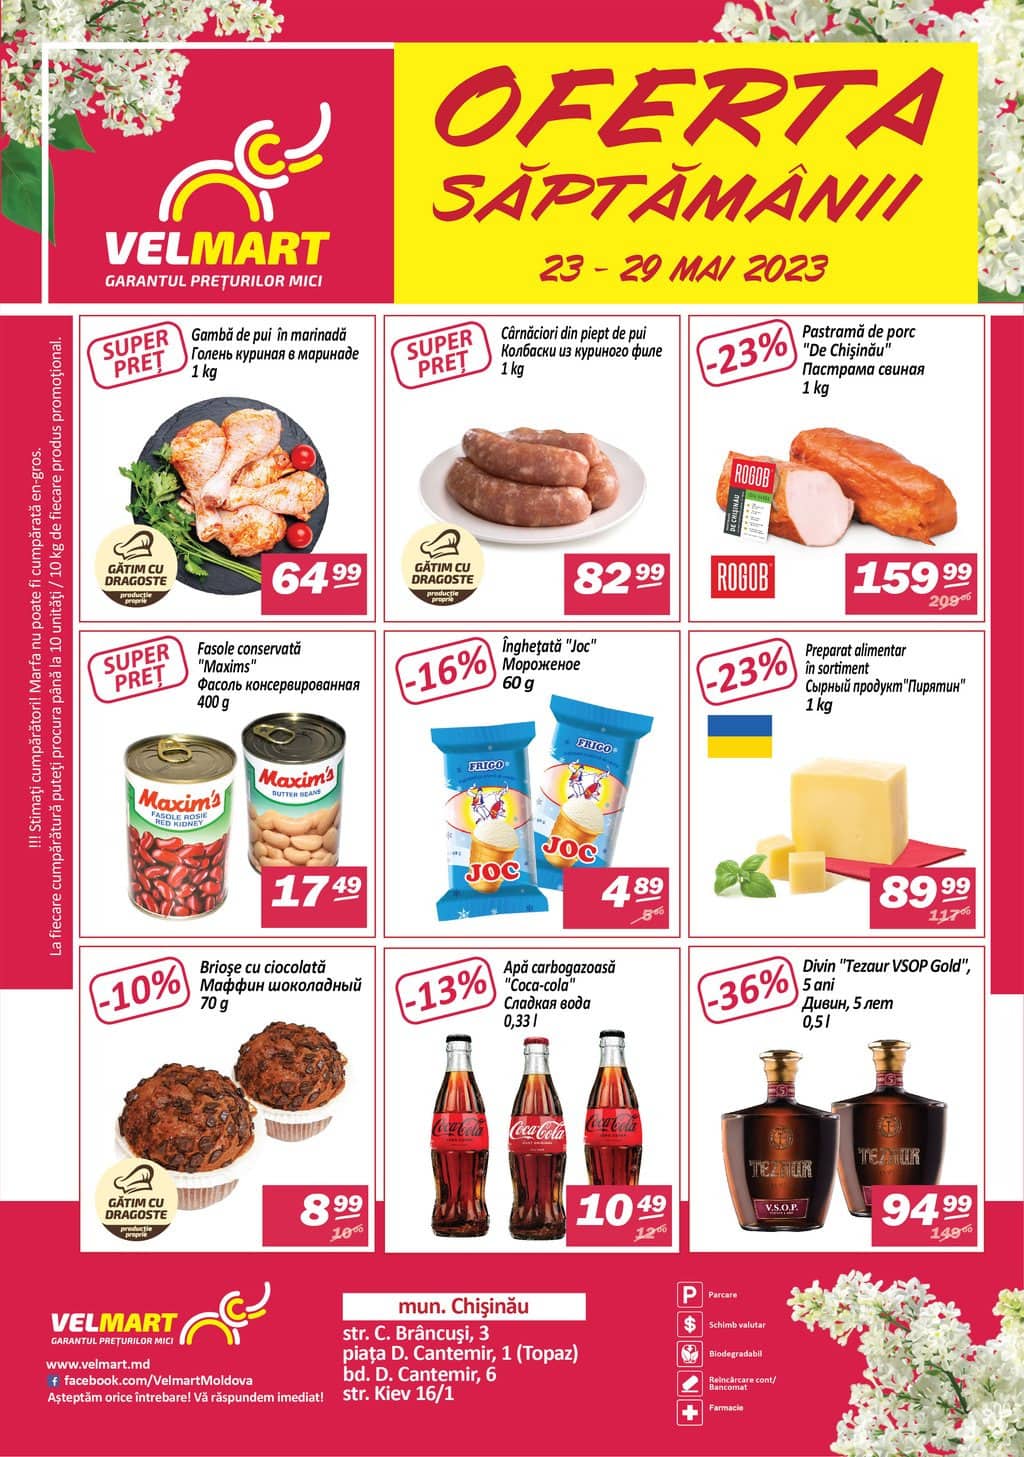 Velmart - Current discounts - 1